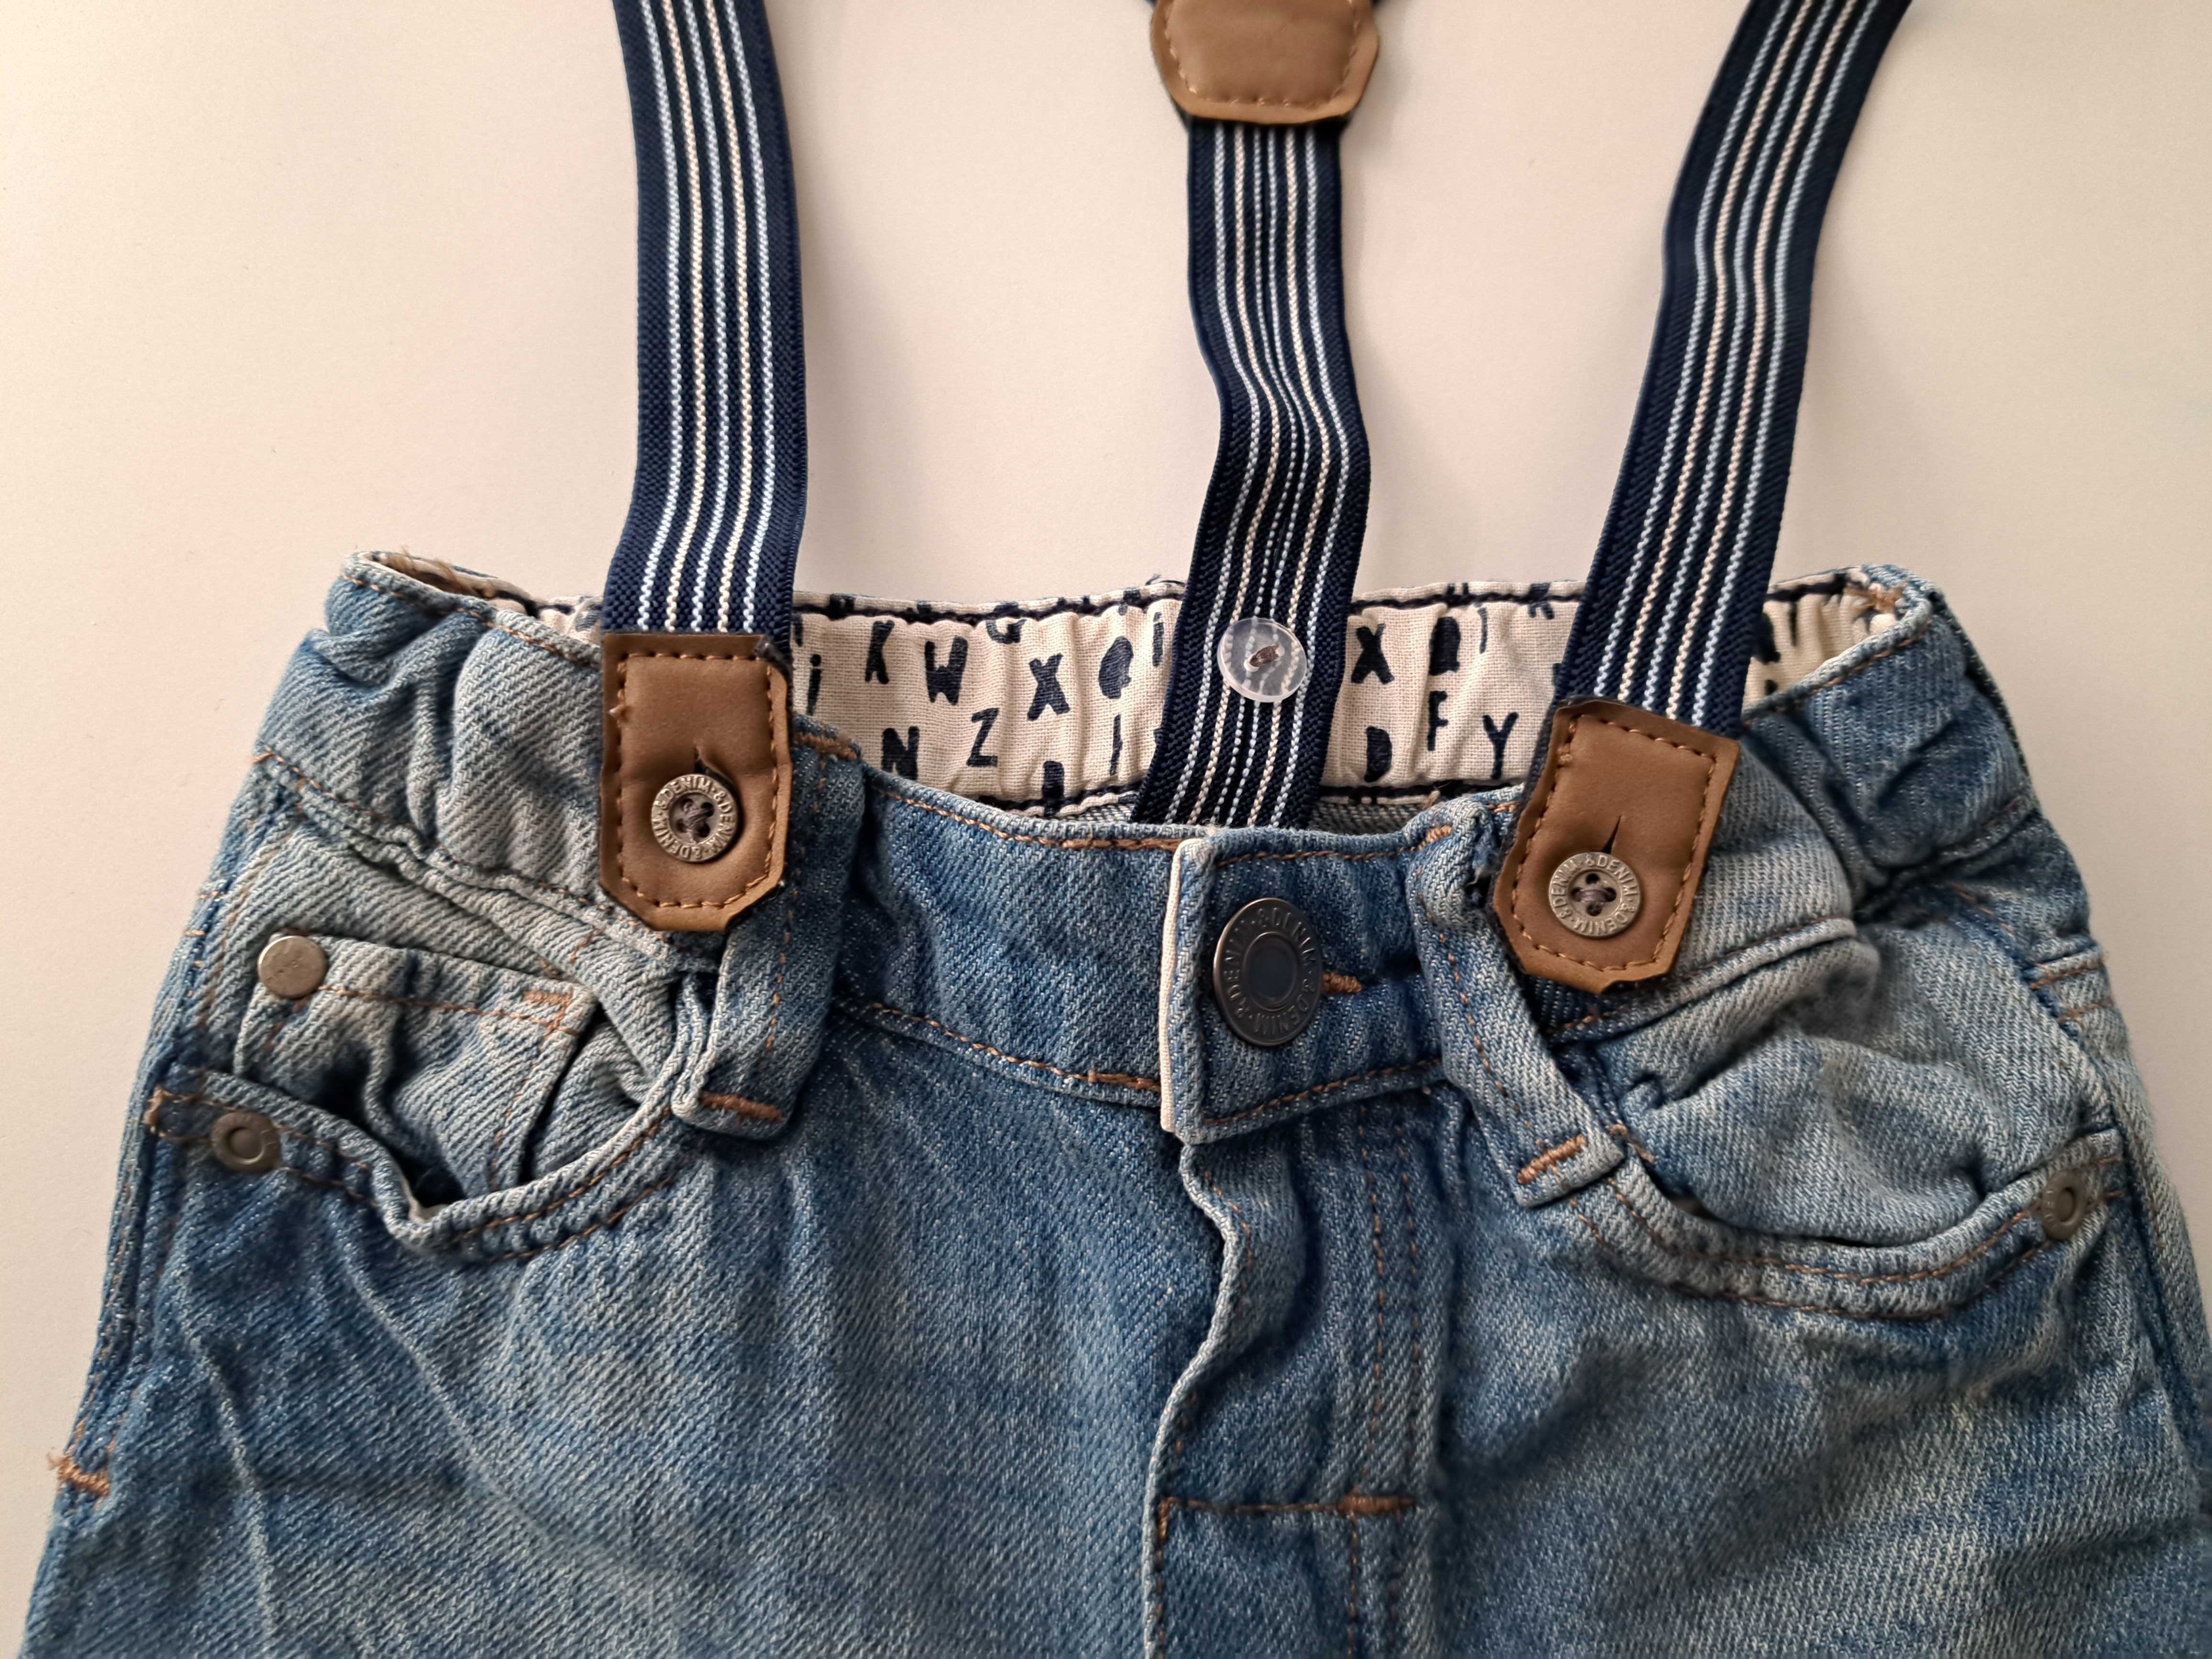 Jeansy# spodnie na szelkach# denim& 74 cm.#6-9 miesięcy # eleganckie